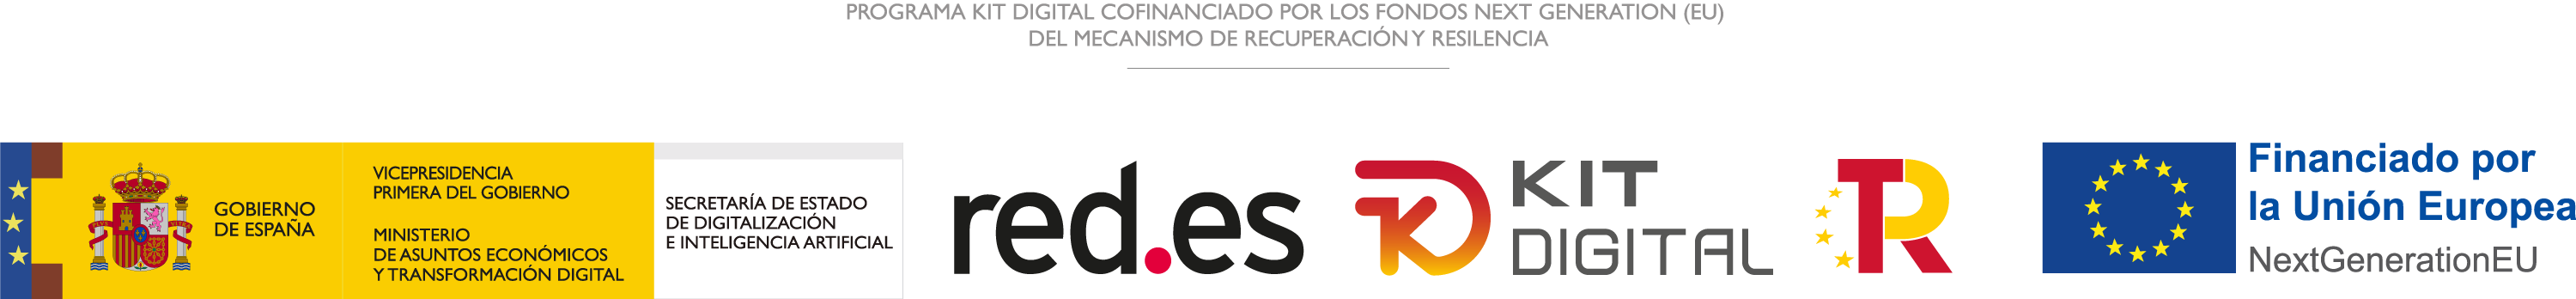 Logotipo completo horizontal del Programa Kit Digital